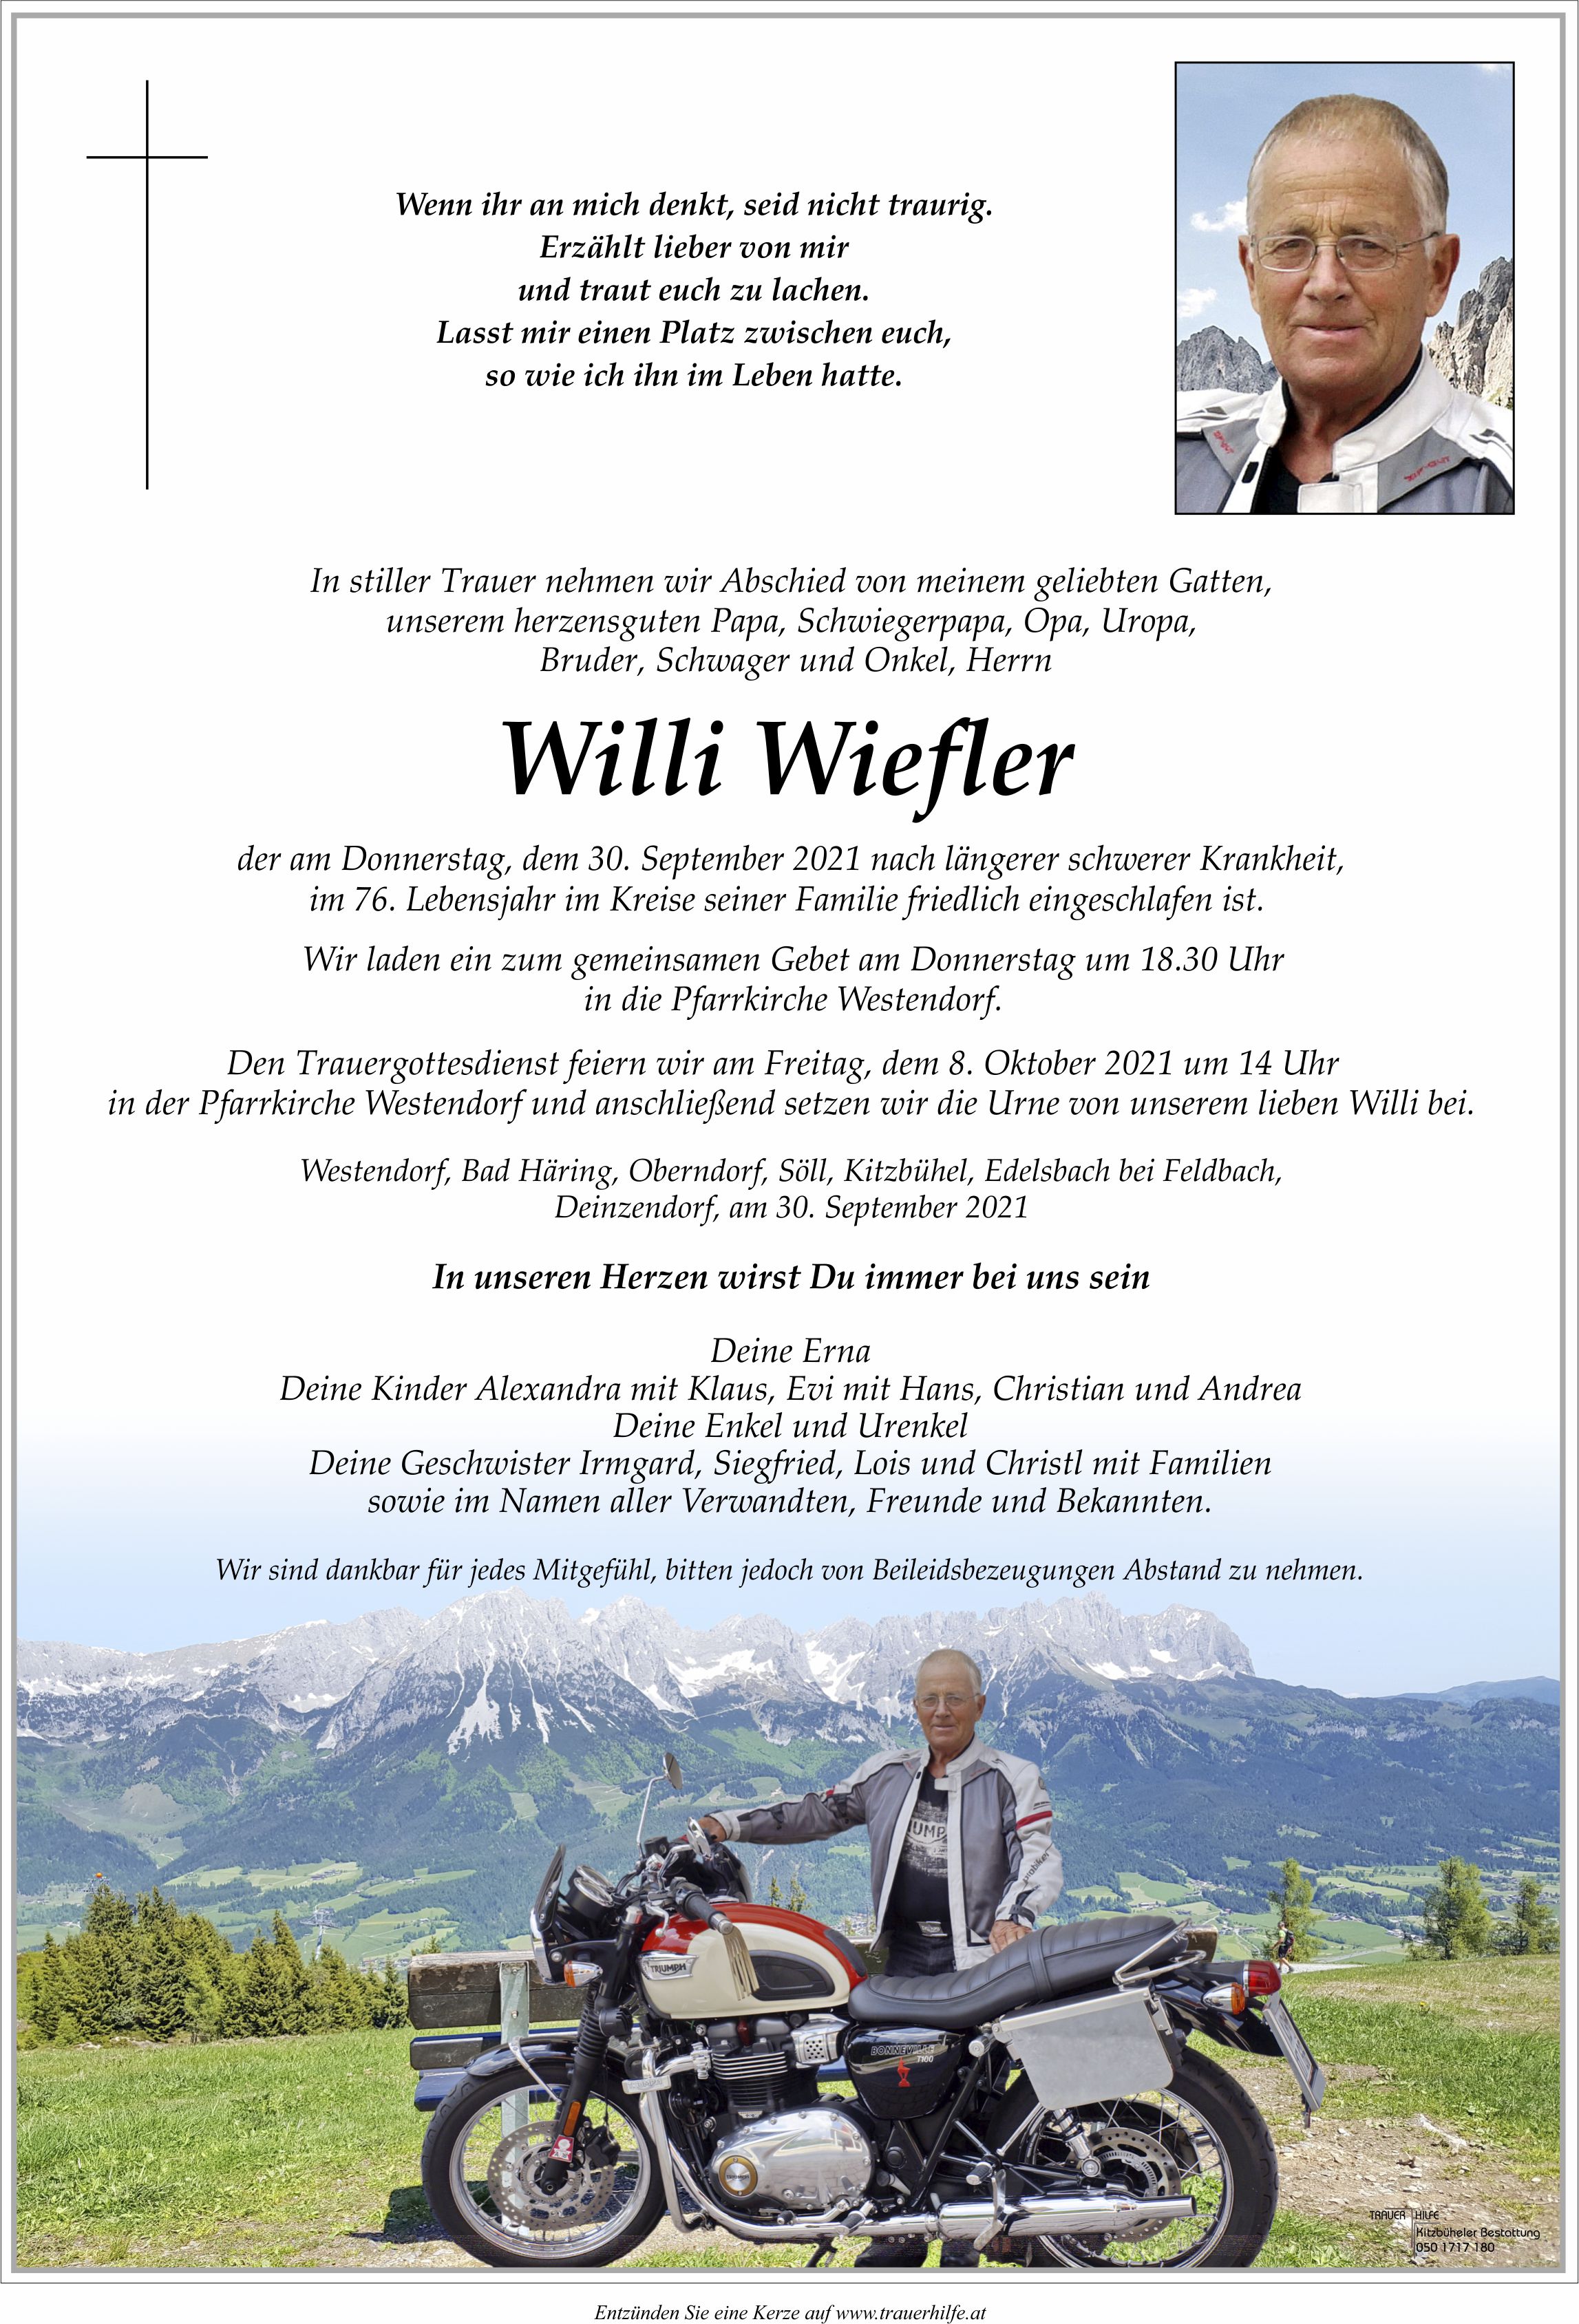 Willi Wiefler